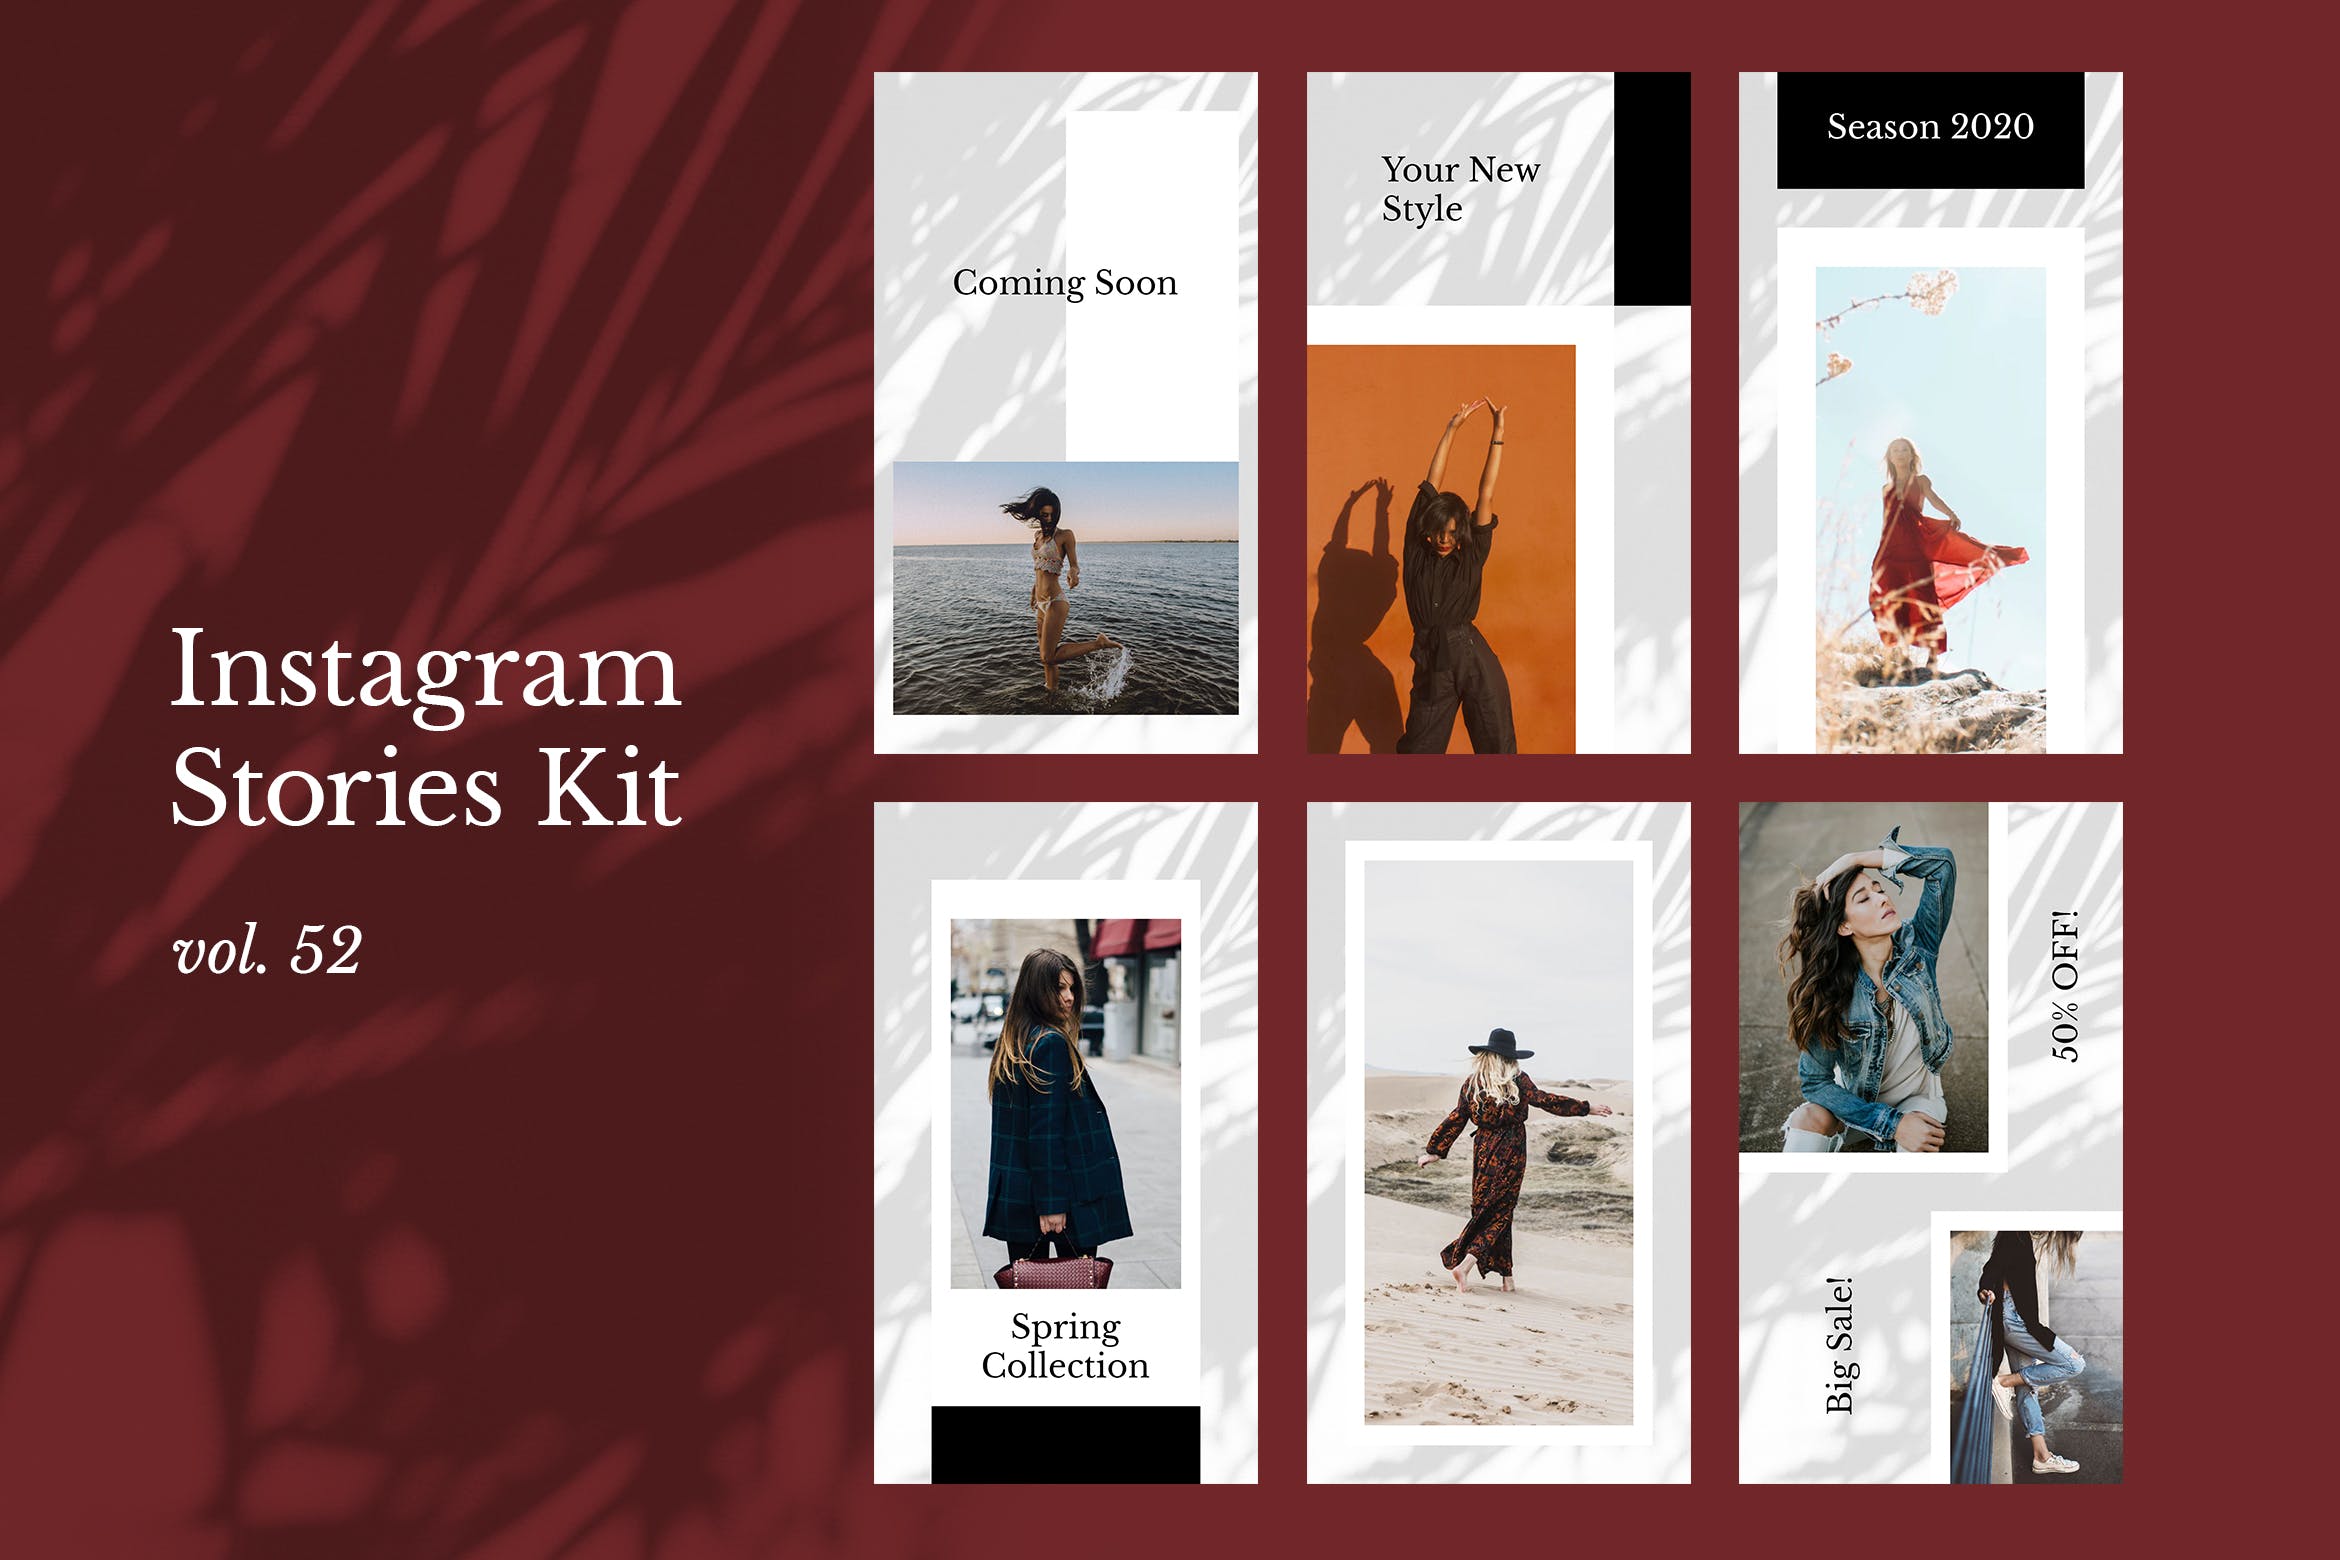 时装品牌产品展示Instagram社交贴图设计模板第一素材精选v52 Instagram Stories Kit (Vol.52)插图